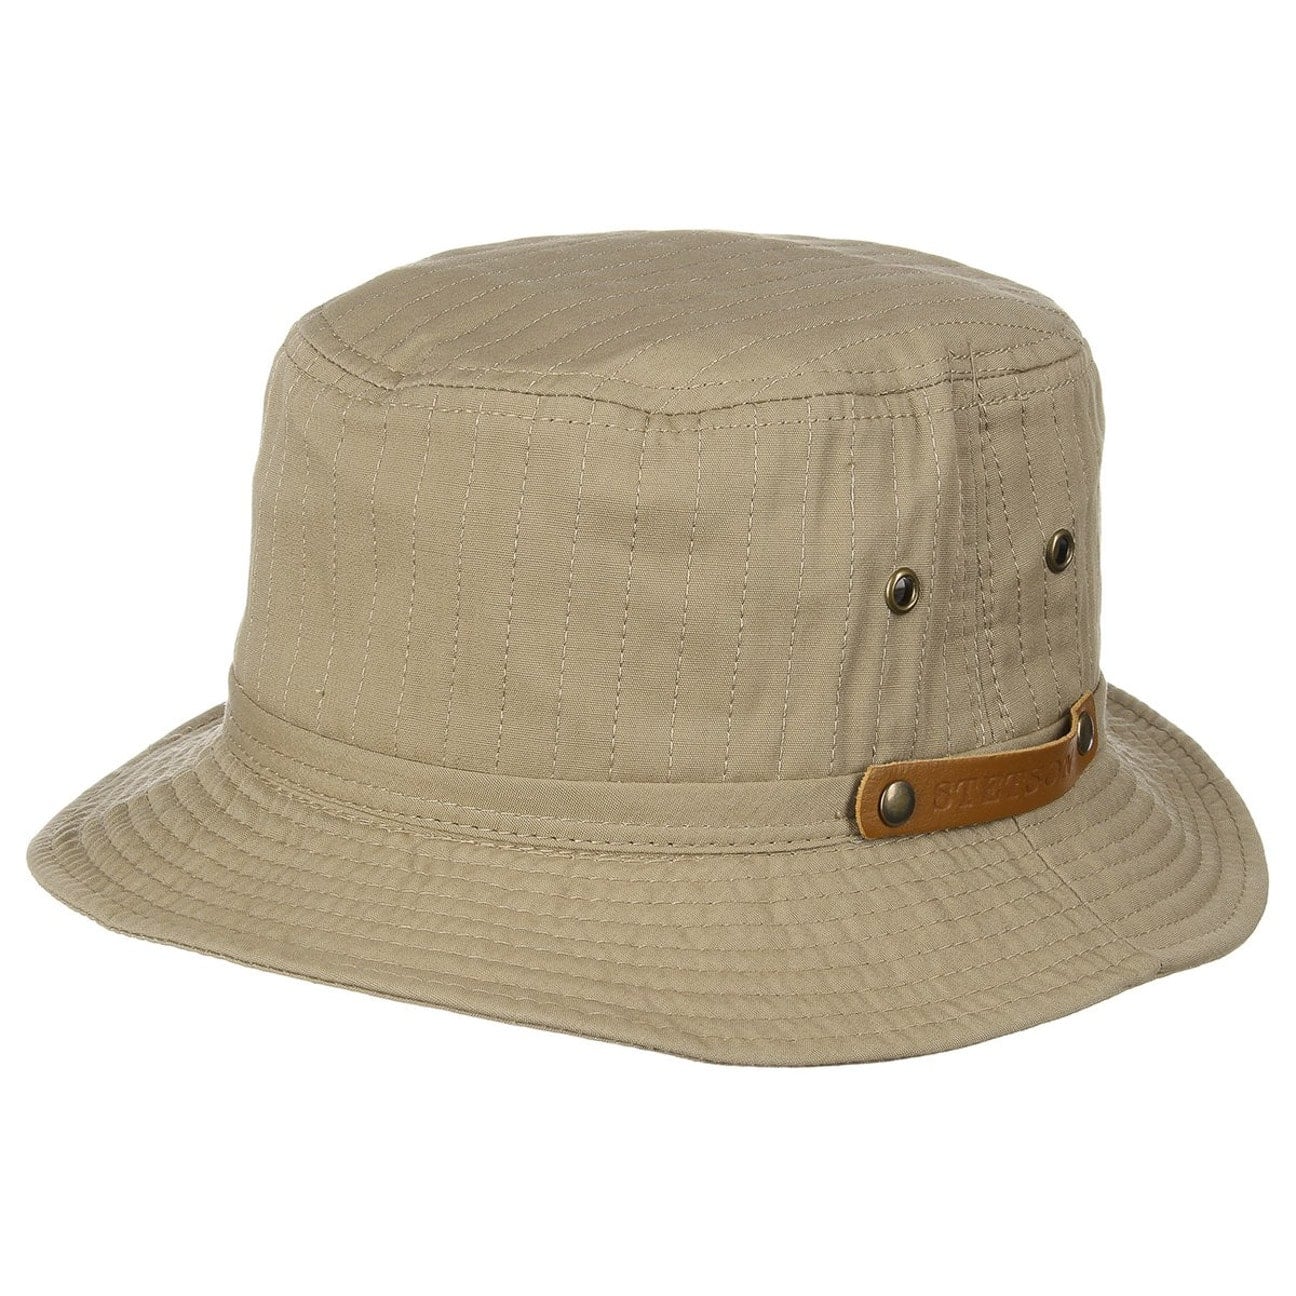 Mason Bucket Hat by Stetson - 39,00